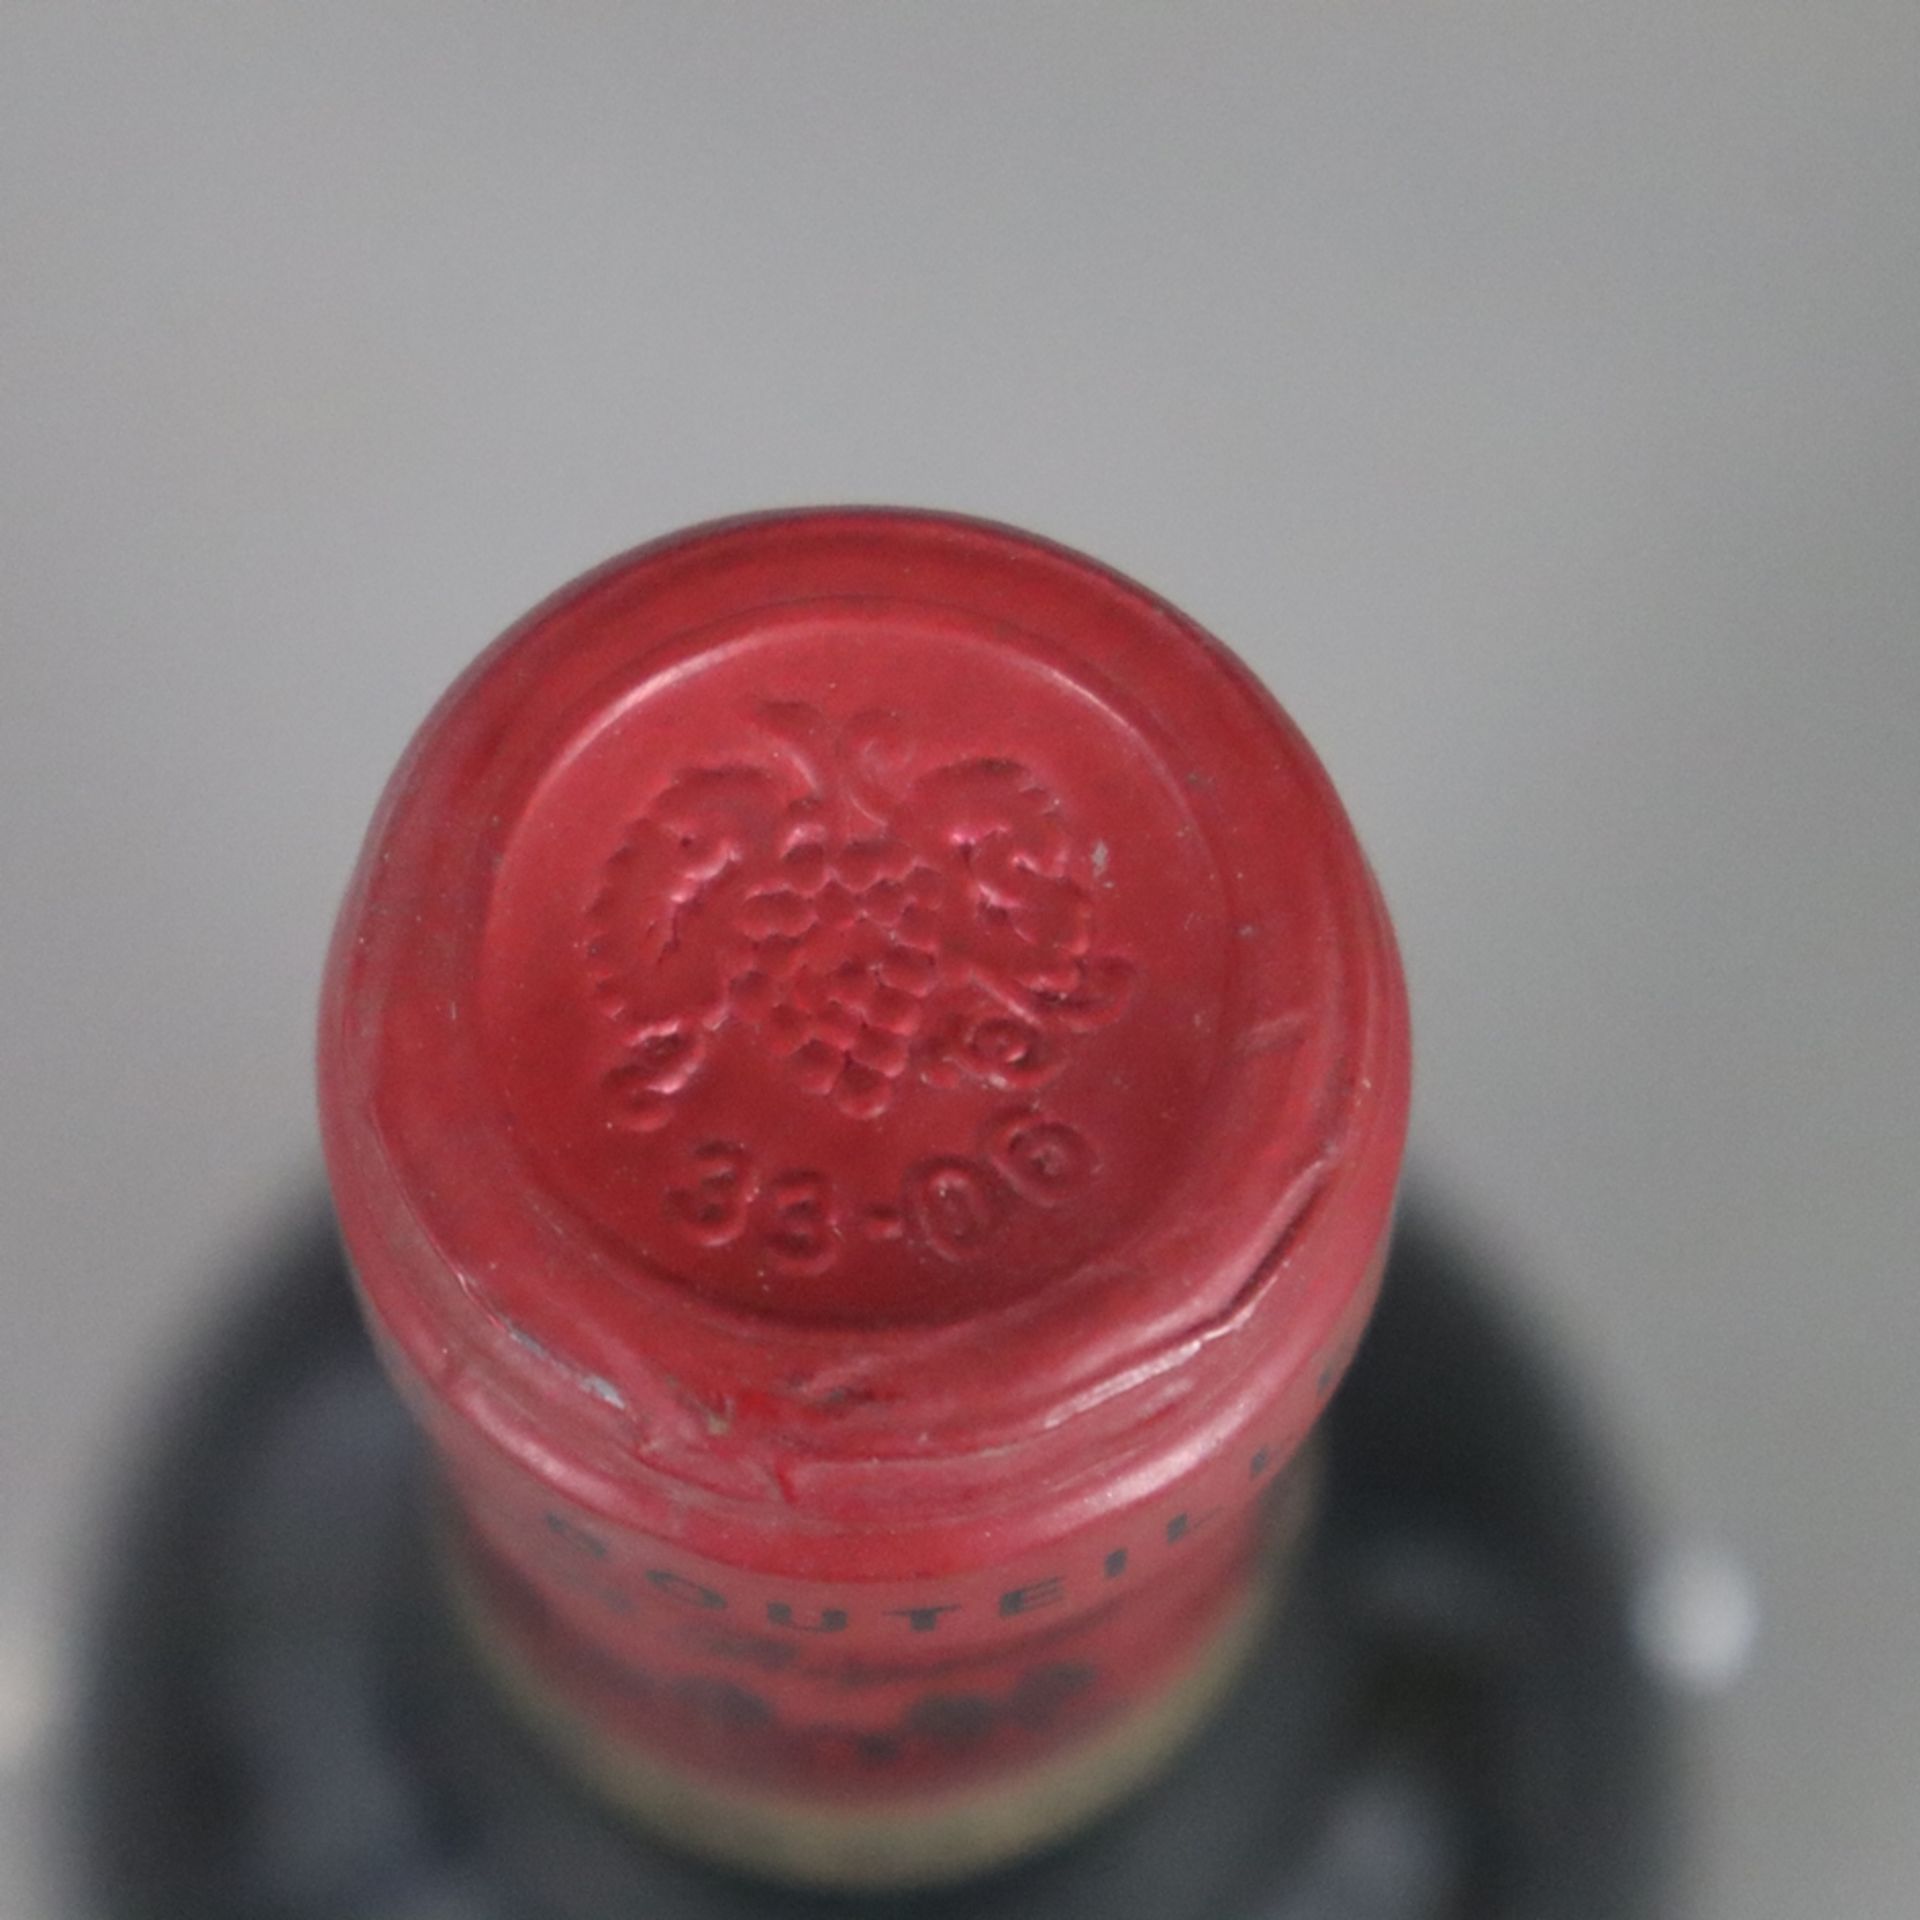 Wein - Château Tour Prignac Médoc, France, 0,7 L, Flasche verschmutzt, Etikett stark beschädigt, Fe - Image 2 of 4